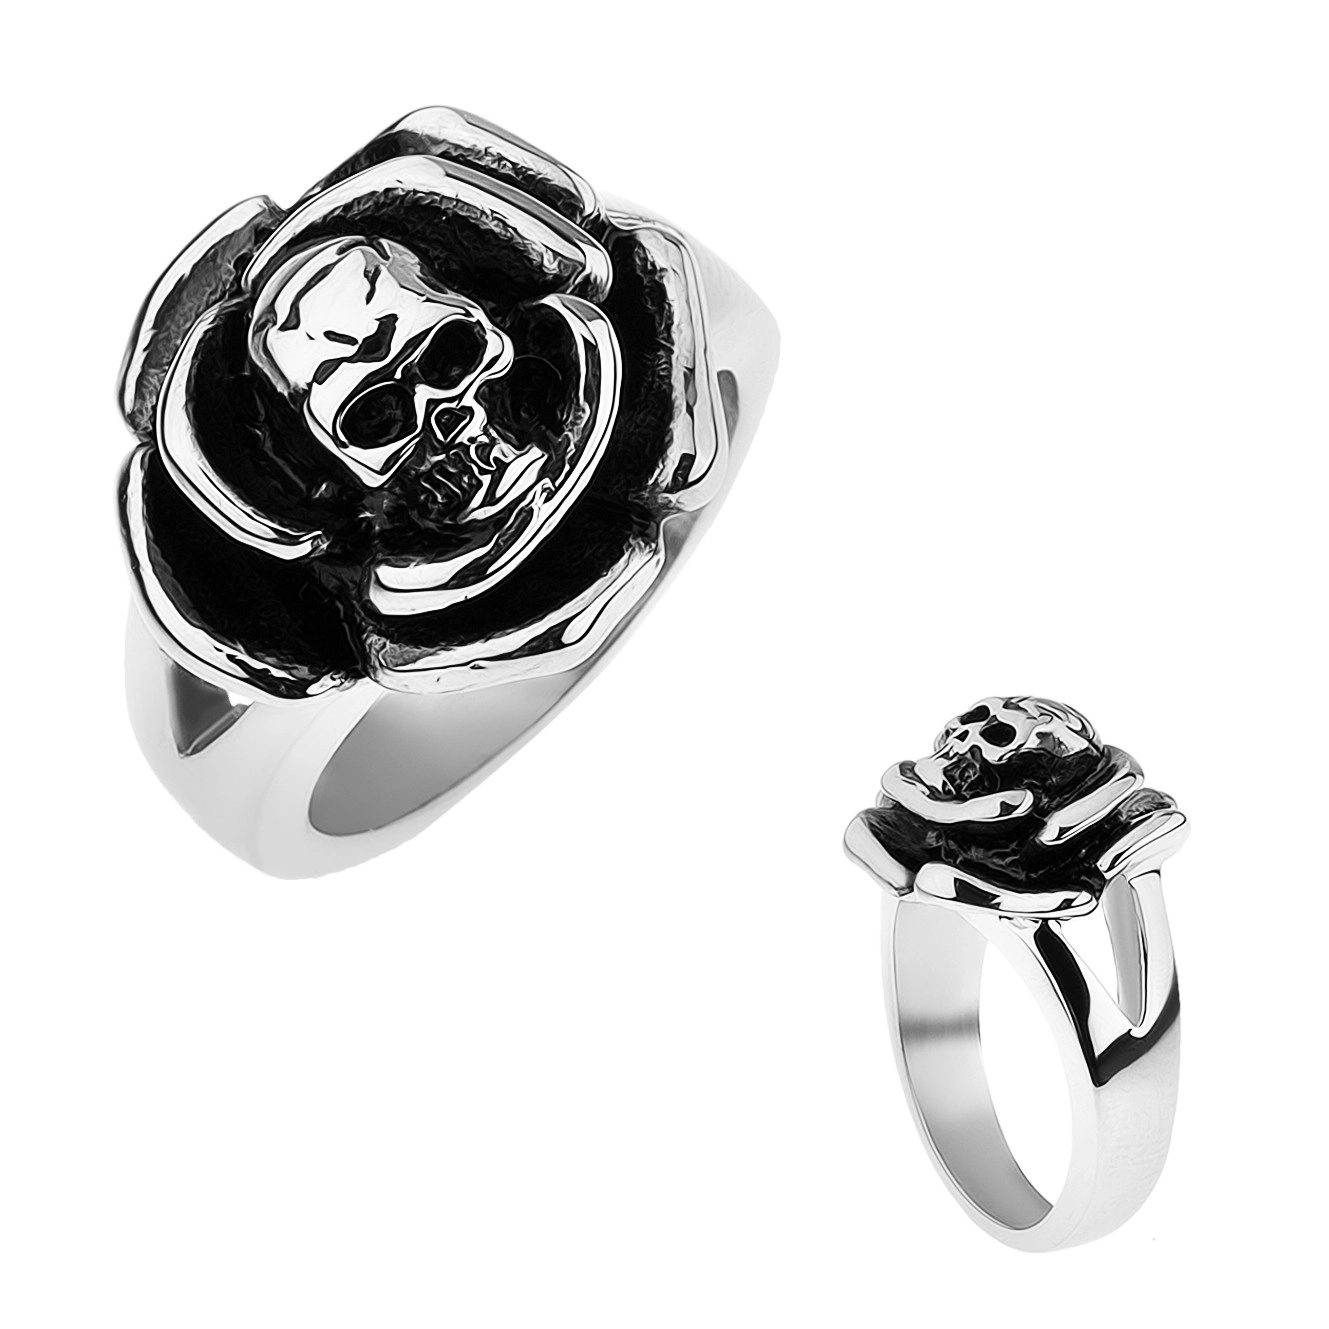 Patinovaný ocelový prsten, růže s lebkou uprostřed, rozdvojená ramena - Velikost: 70